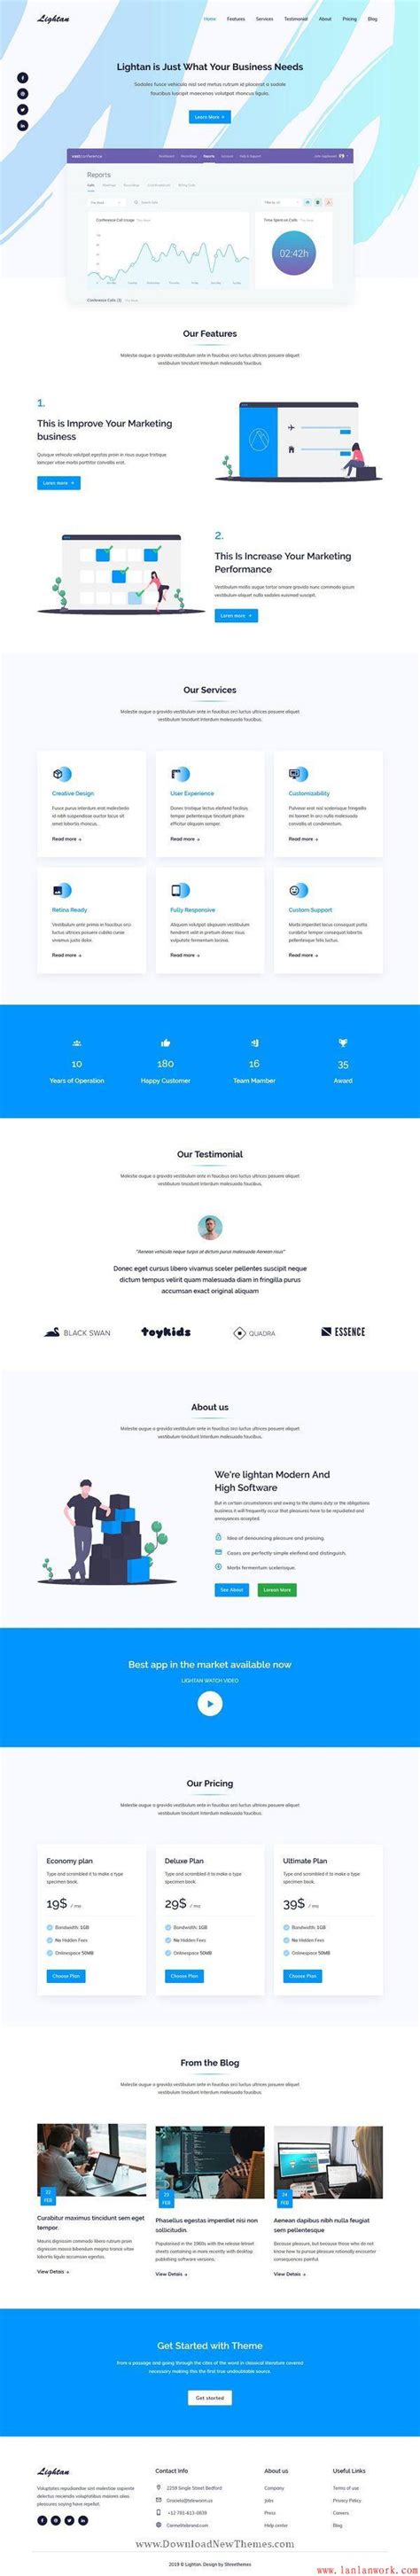 高端网站设计优秀案例欣赏——汽车网站设计 - 蓝蓝设计_UI设计公司